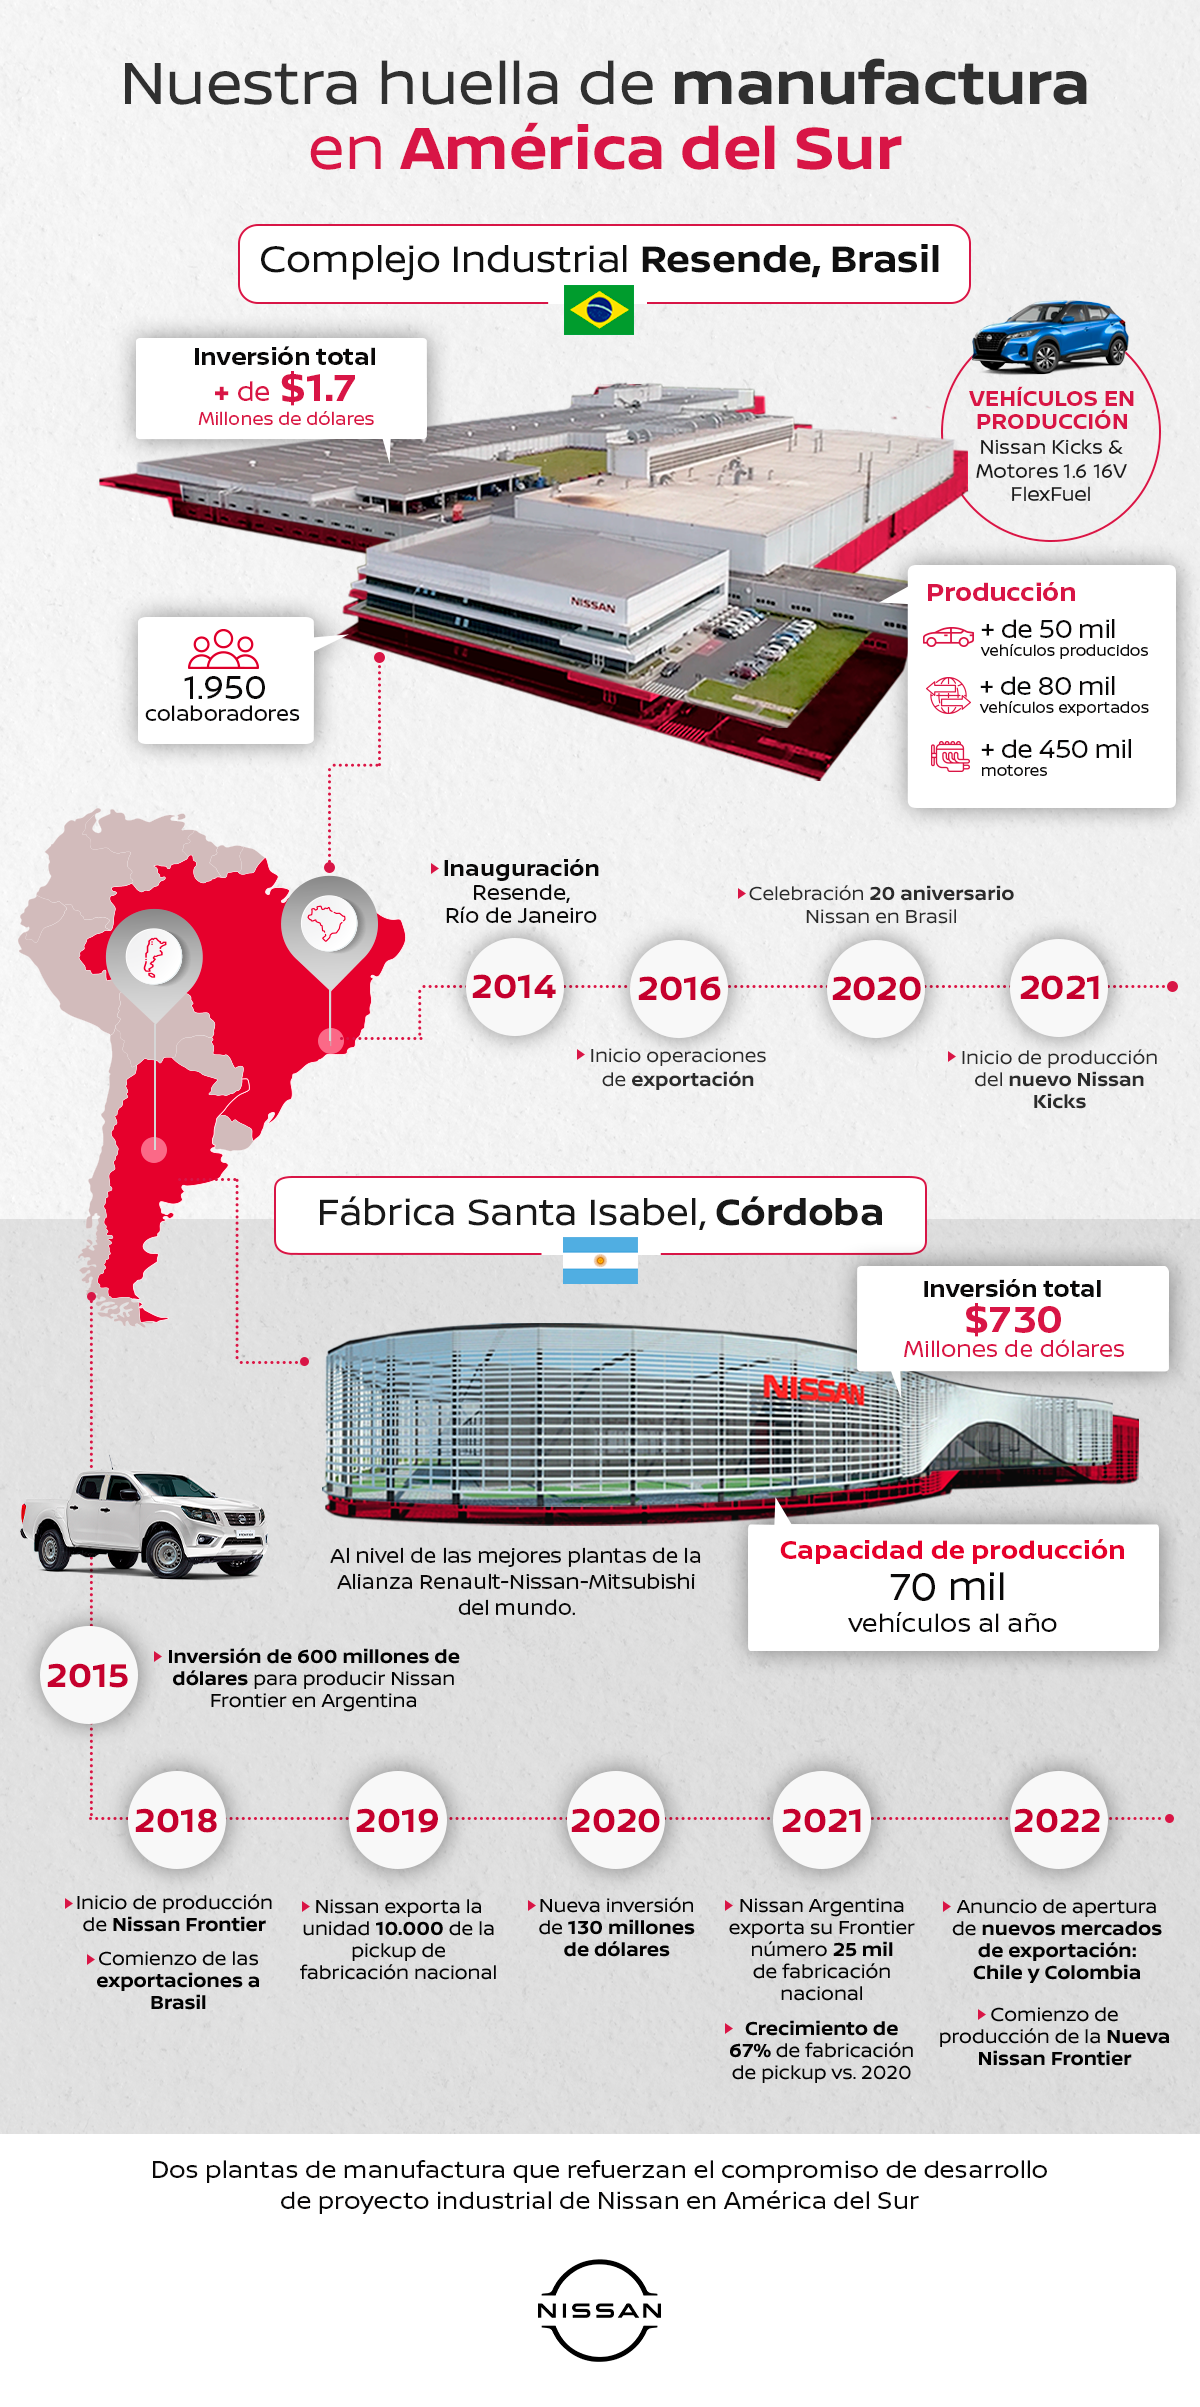 Brasil y Argentina: dos polos de producción que reflejan la apuesta de Nissan en América del Sur